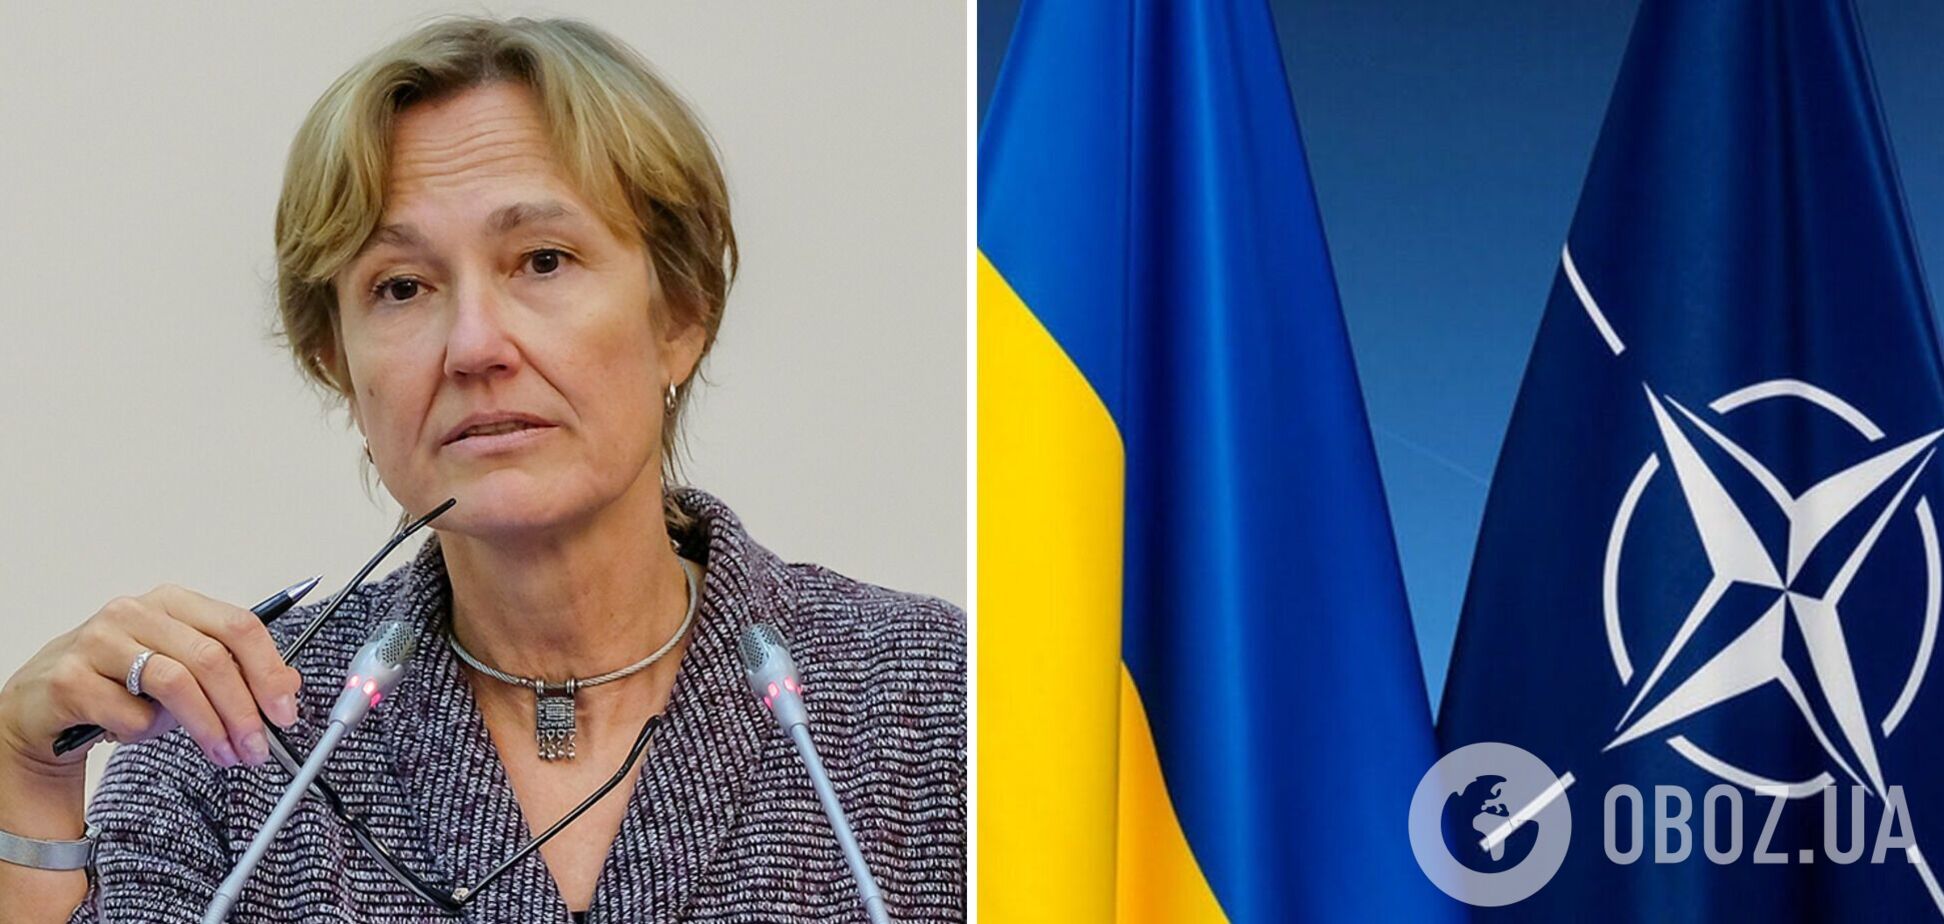 Посол Германии о перспективах вступления Украины в НАТО: нужен консенсус, все боятся войны